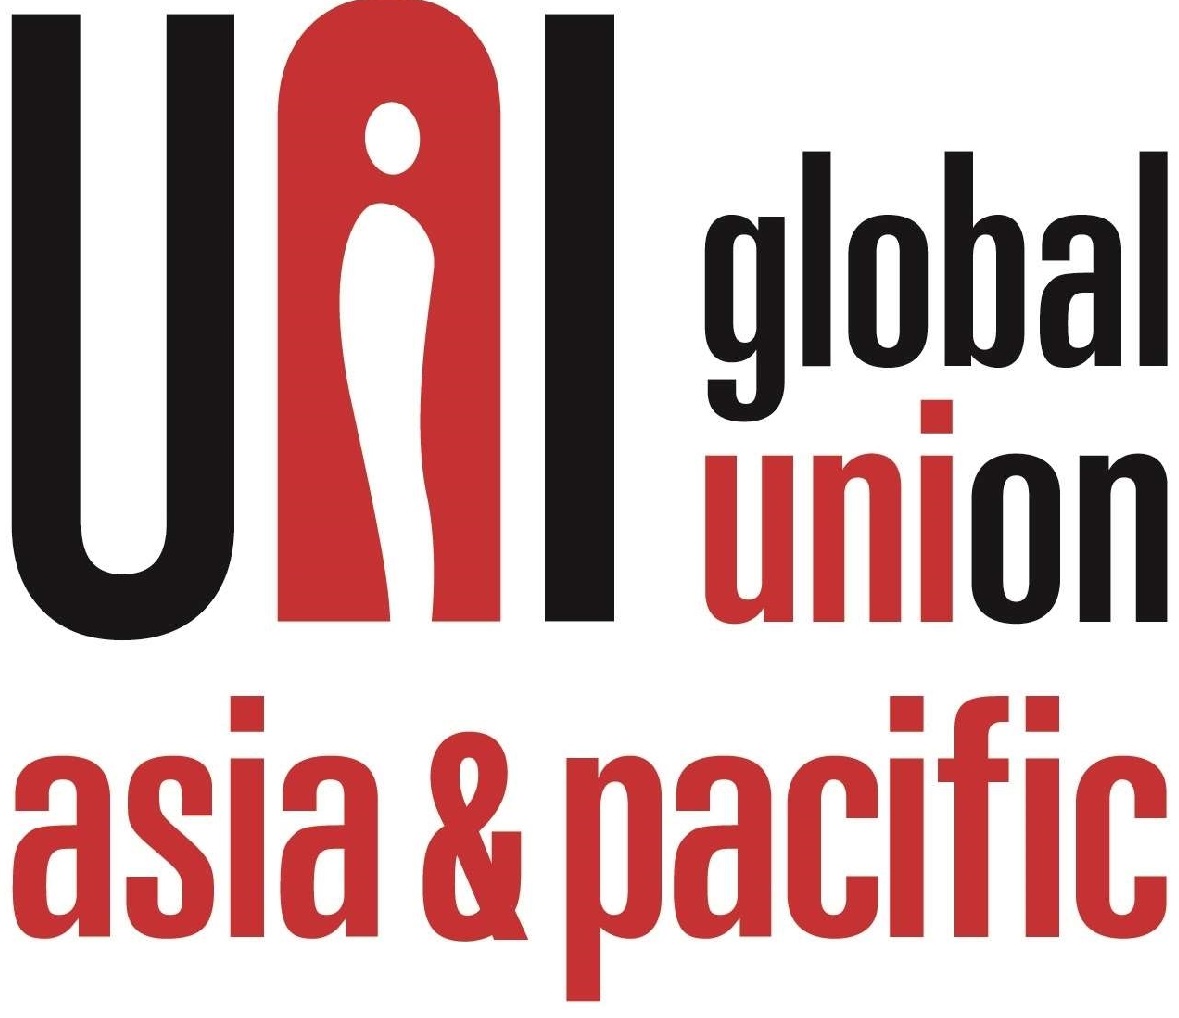 UNI Asia & Pacific